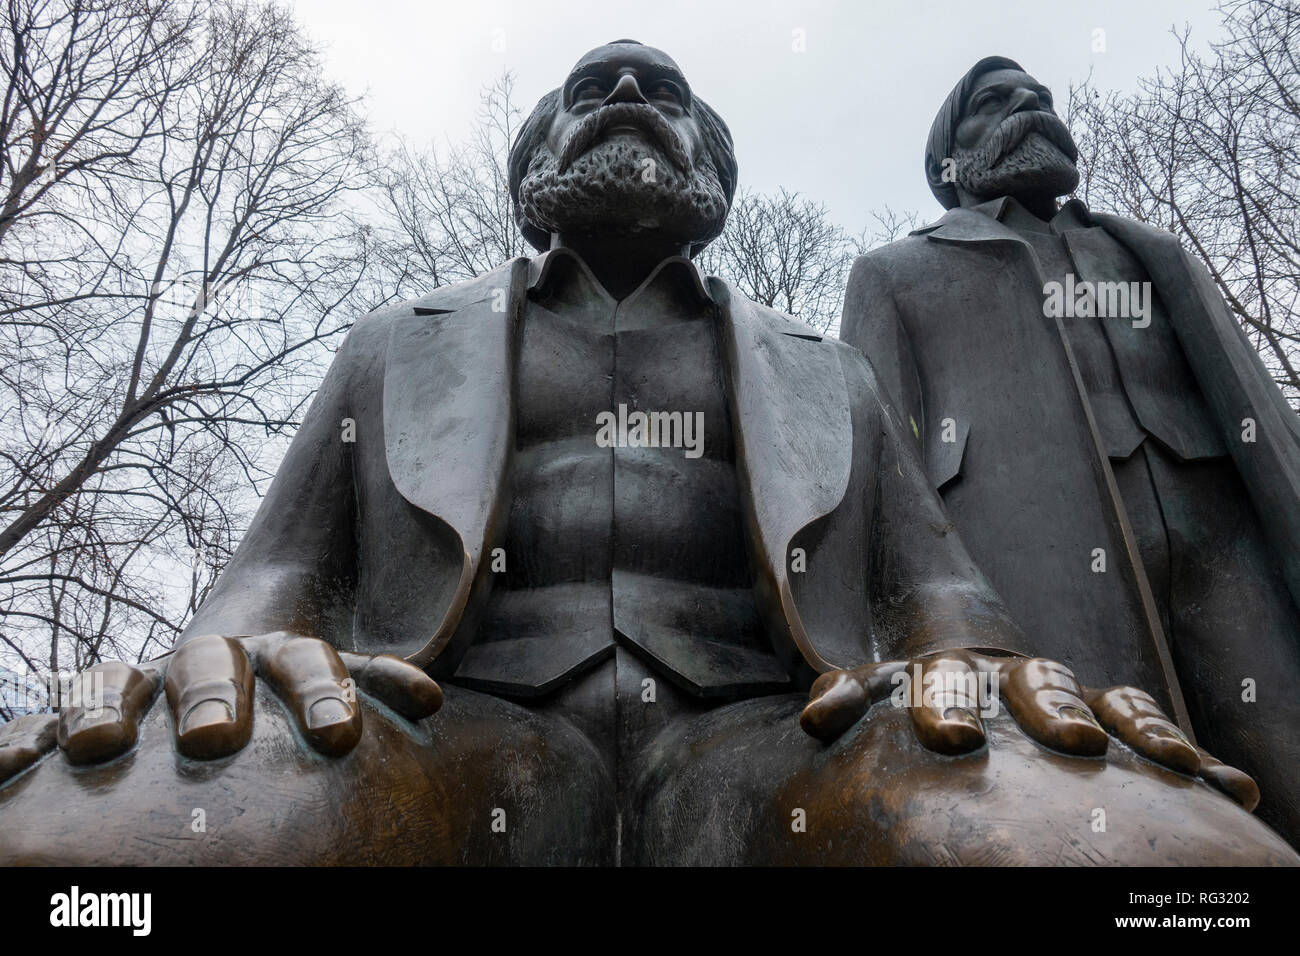 Les Statues de Karl Marx et Friedrich Engels le marxiste et philosophe à l'Alexanderplatz à Berlin, Allemagne Banque D'Images